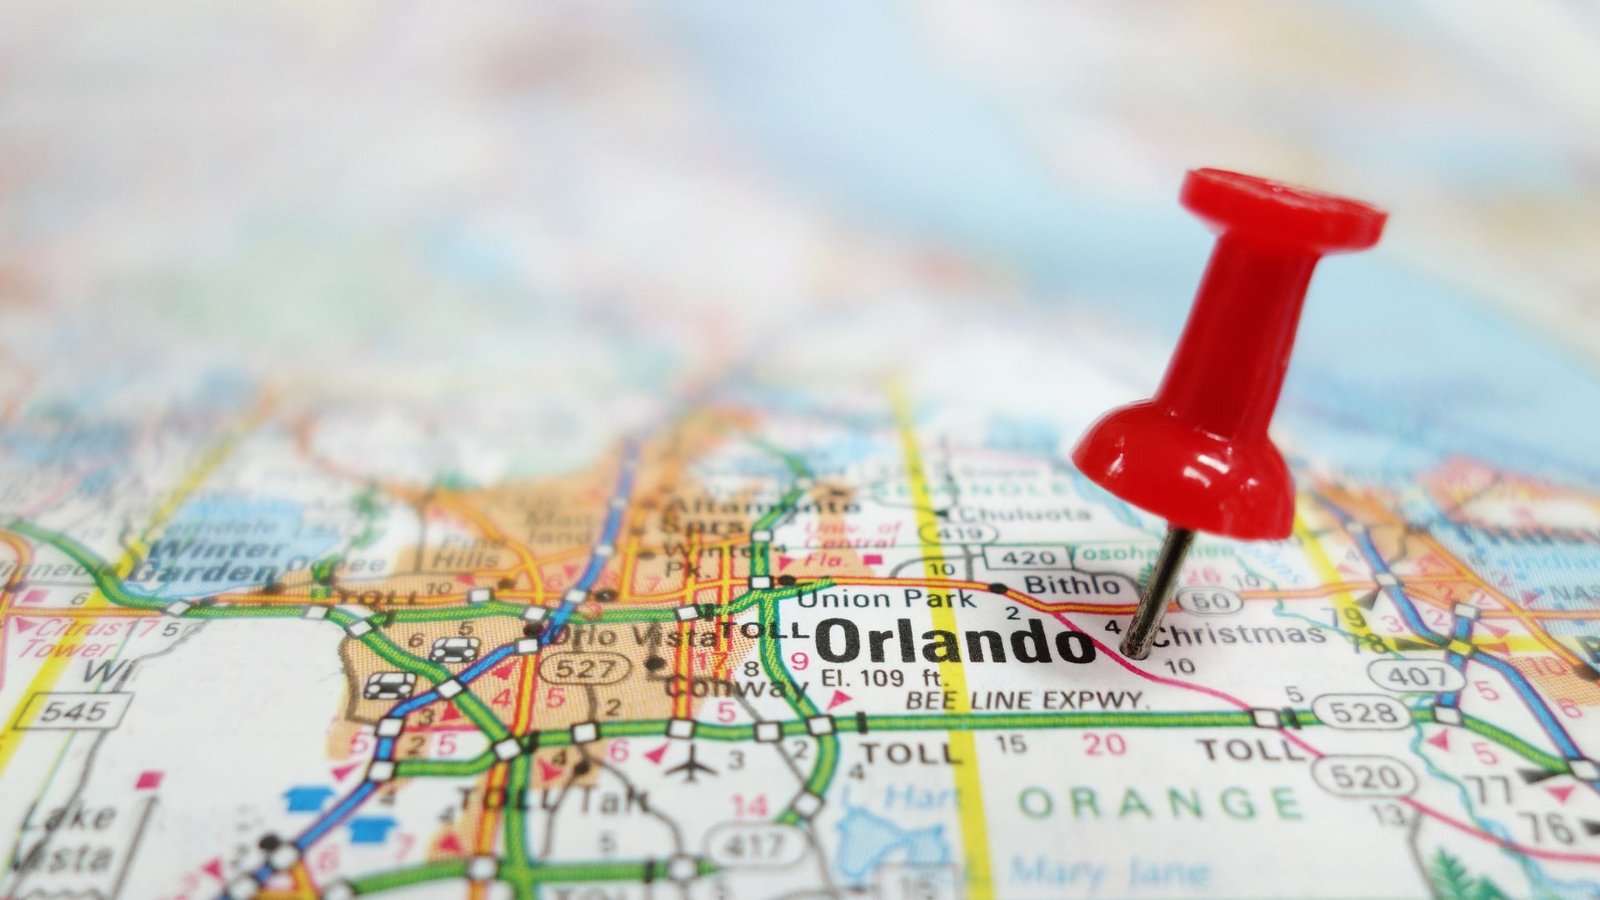 Pin sobre el mapa de Florida: ¿Es necesario vender antes de comprar? LUZ ANGELA AGREDO - Agente Inmobiliaria en Florida tiene la respuesta